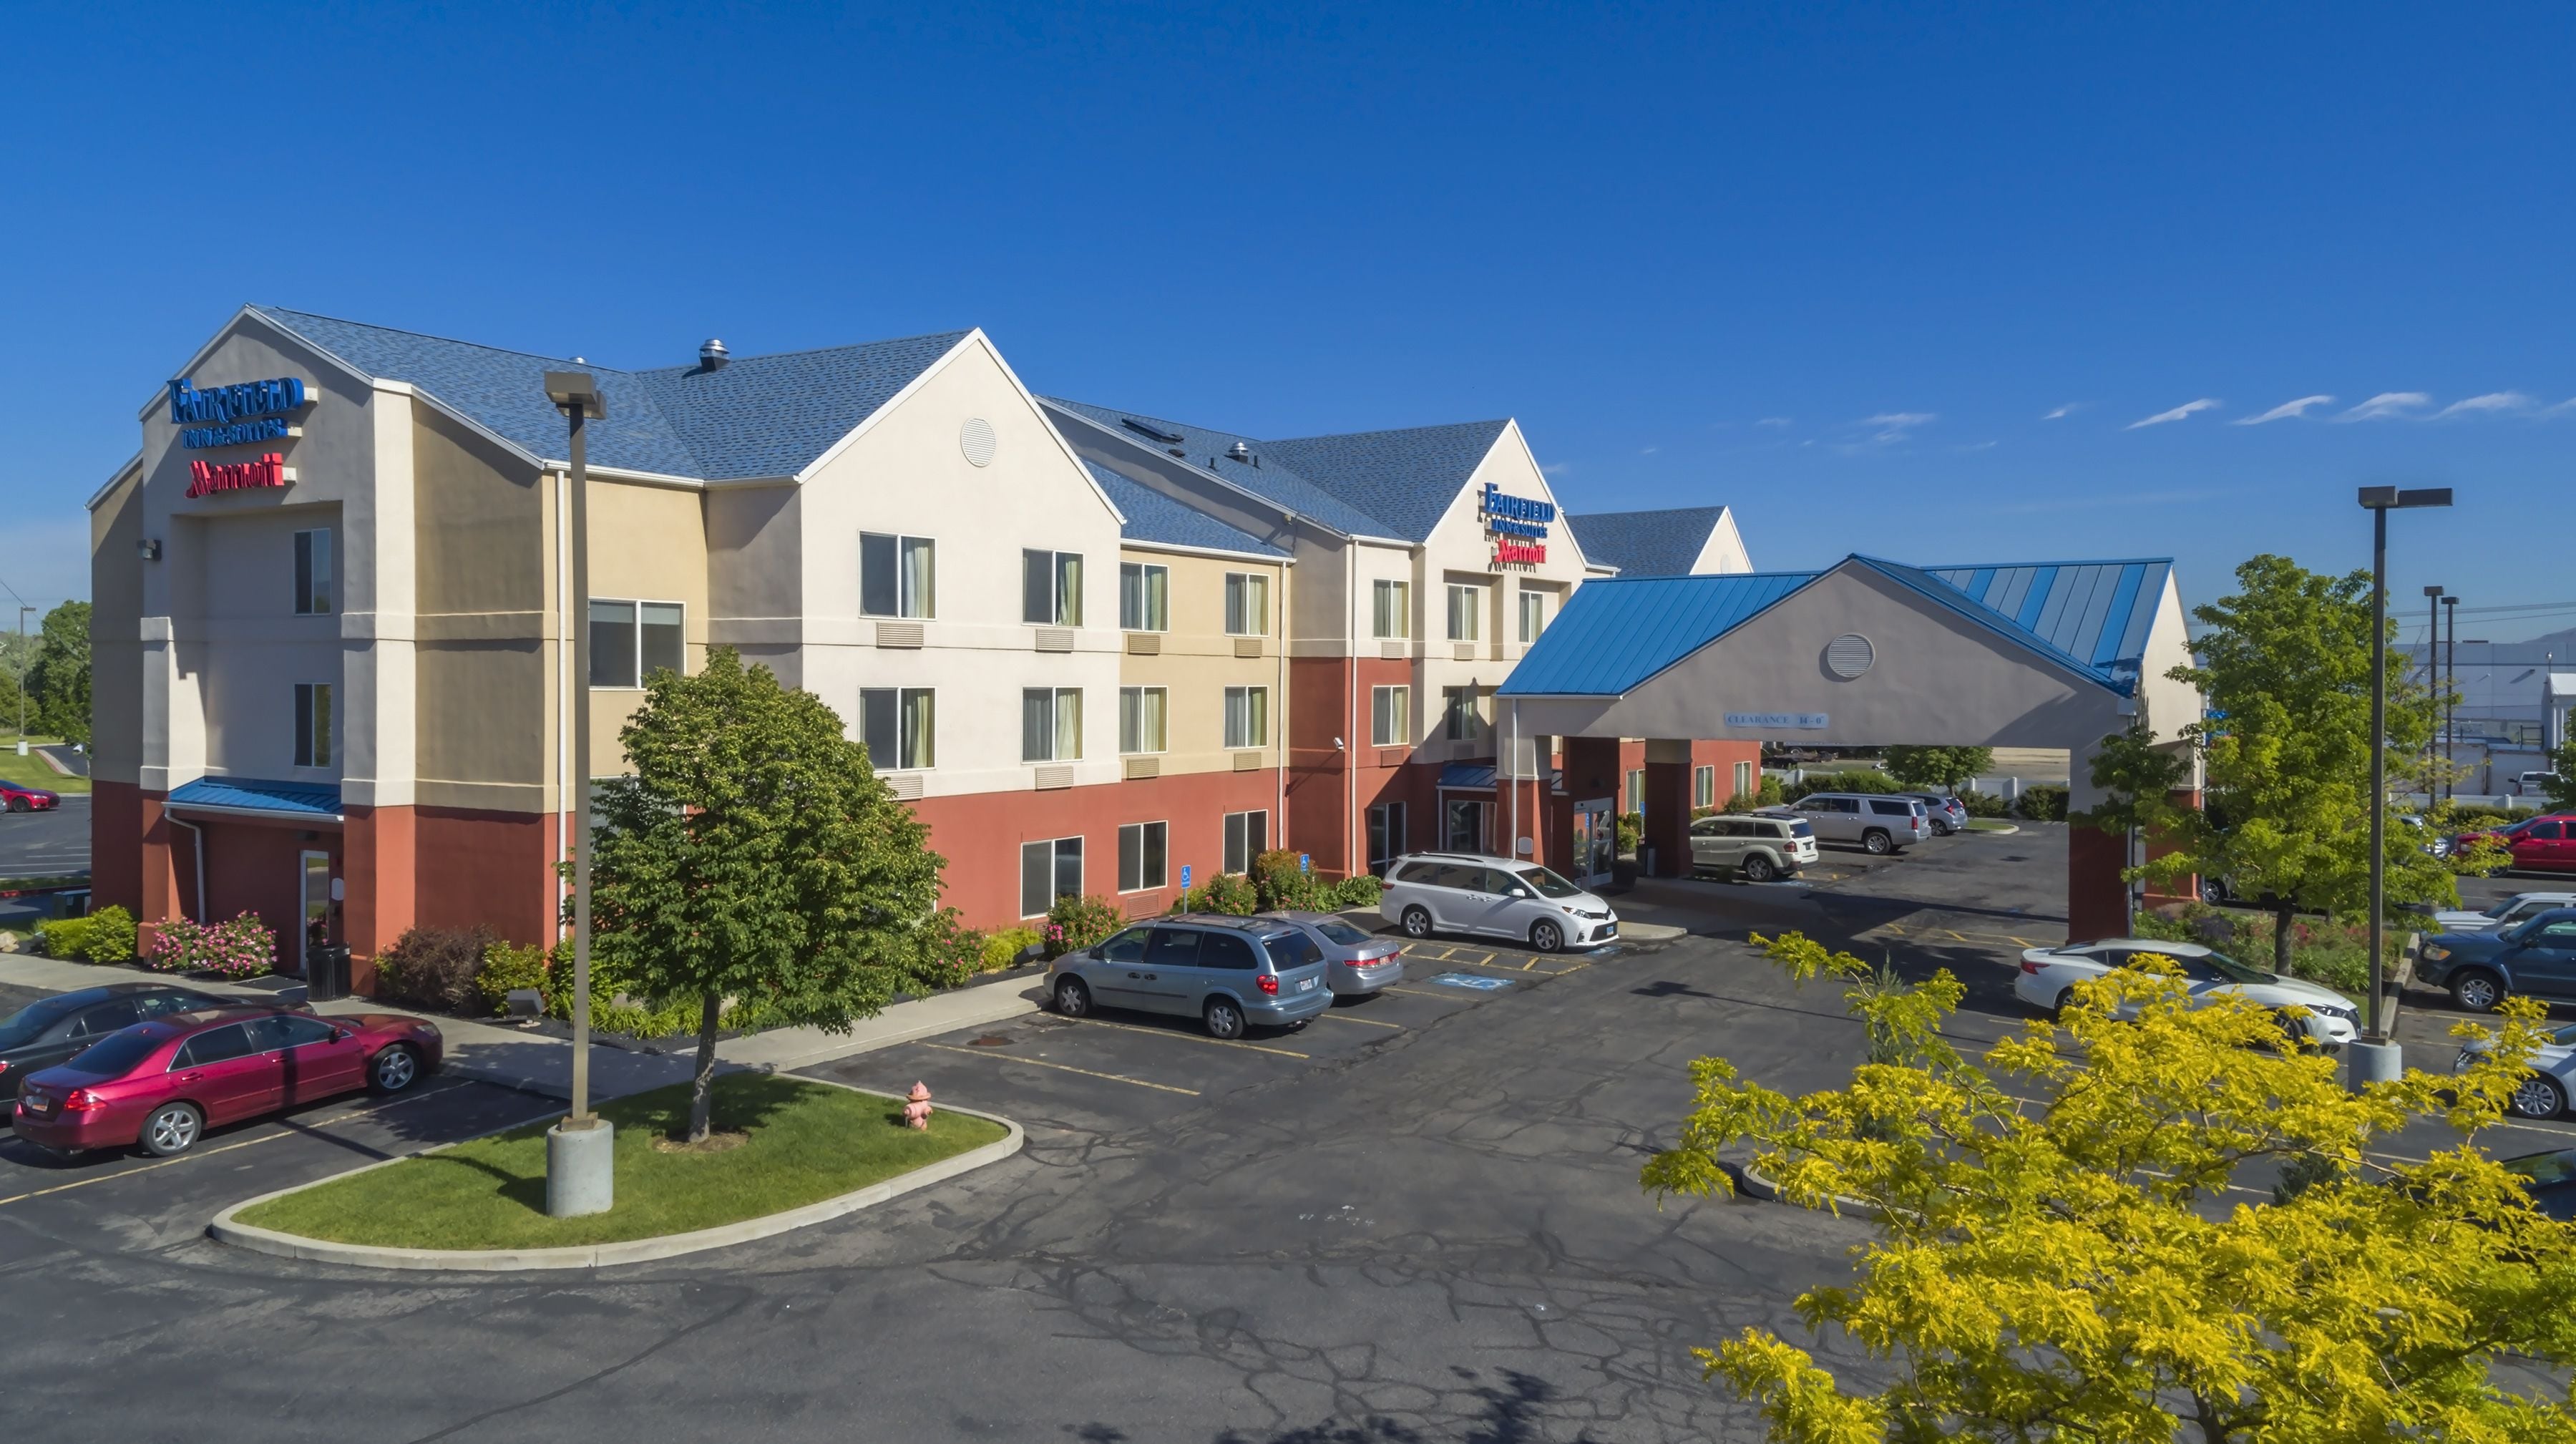 Fairfield Inn & Suites Salt Lake City South